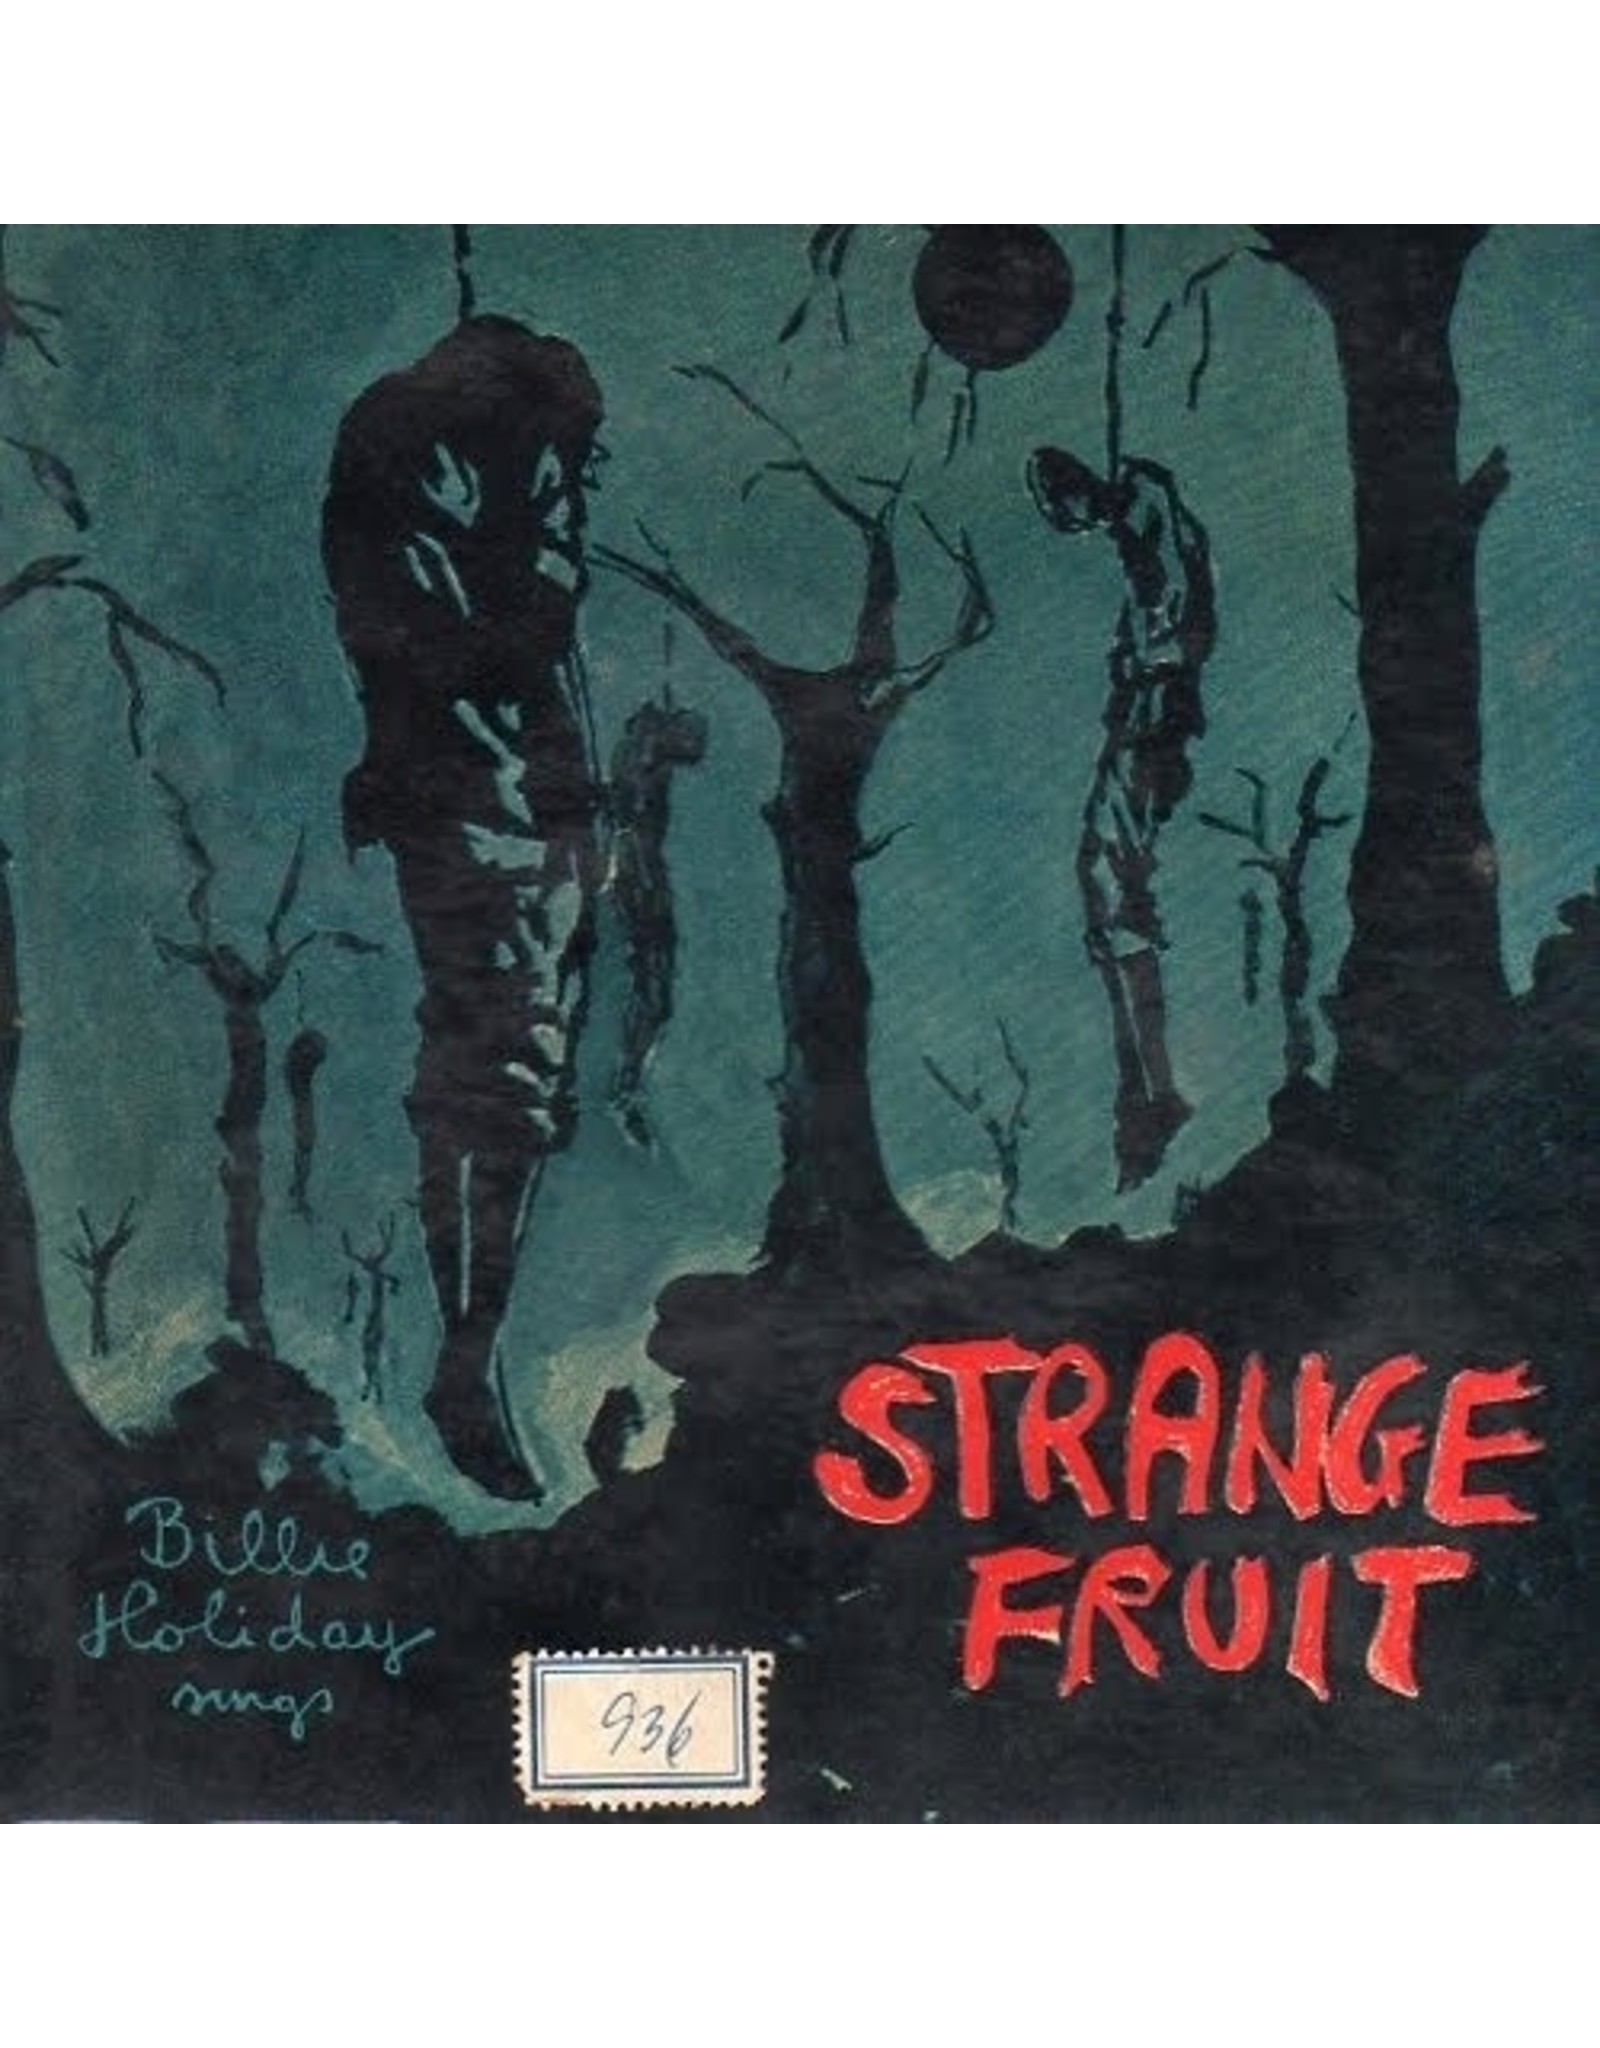 New Vinyl Billie Holiday - Strange Fruit LP